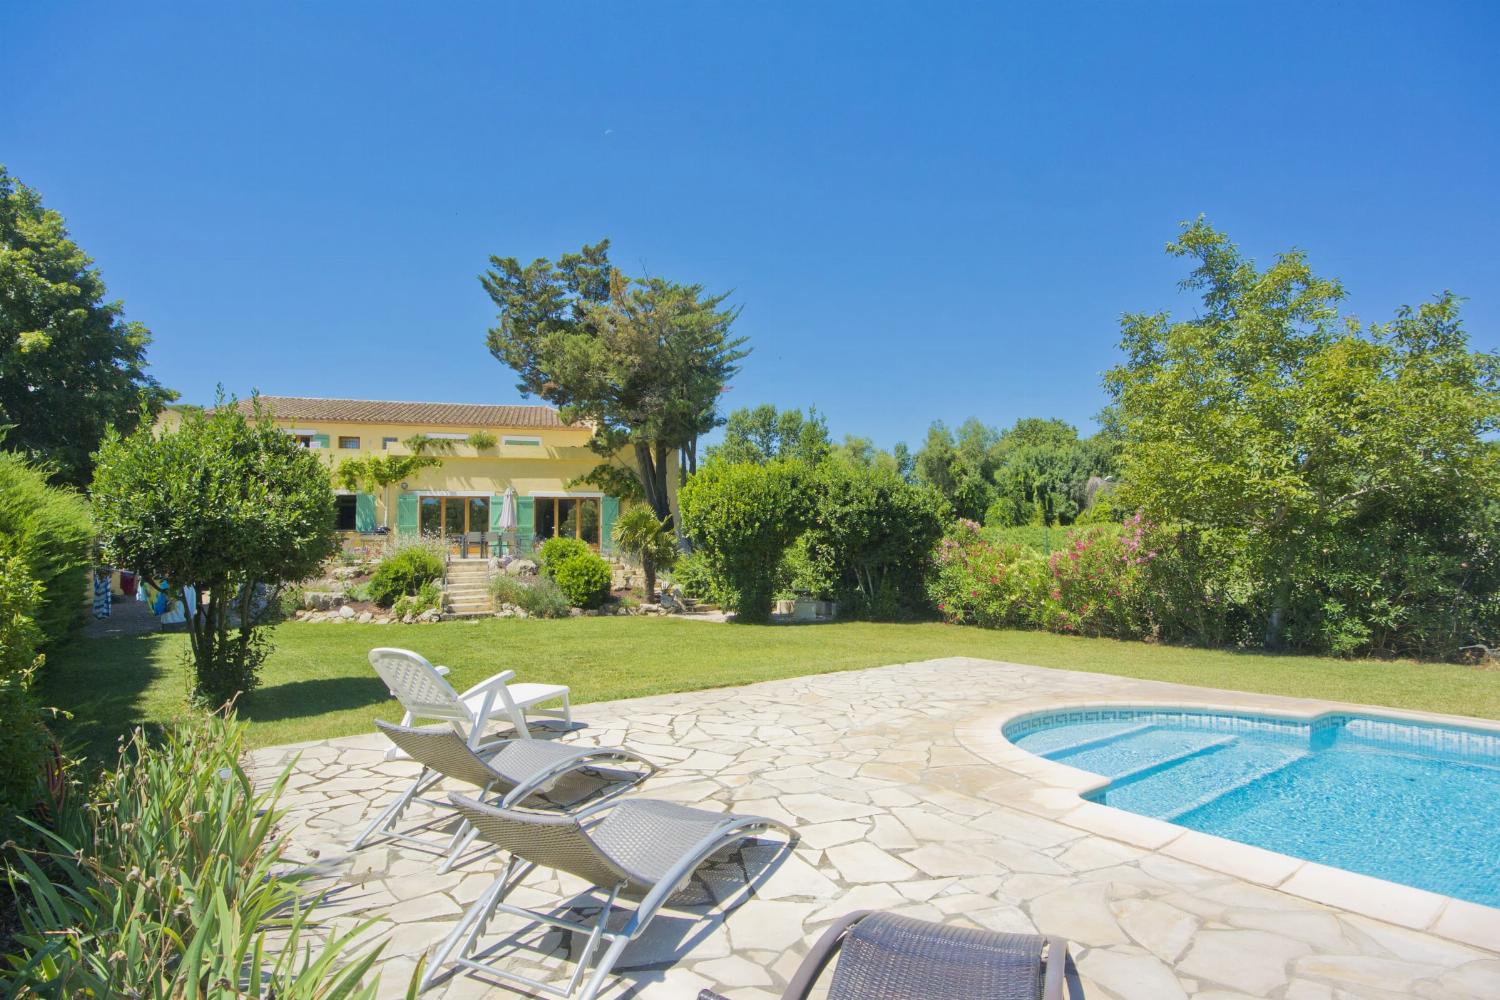 Location maison dans le sud de la France avec piscine privée